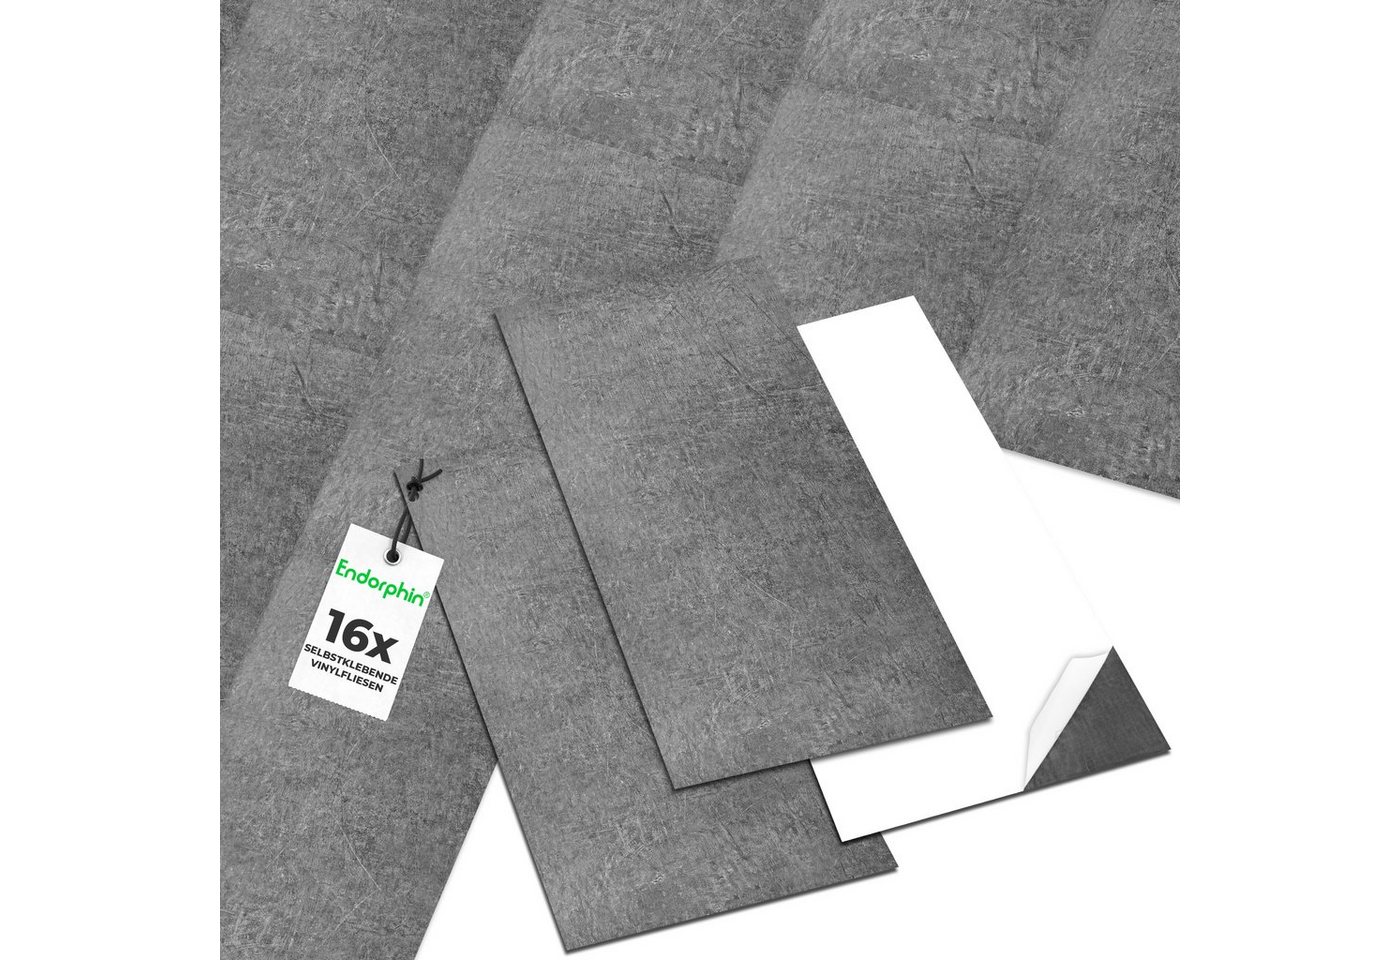 Endorphin Vinylboden Vinylboden selbstklebend in Betonoptik Dunkelgrau 2,97qm, selbstklebend, aus recyceltem Material, mit fühlbarer Oberfläche von Endorphin